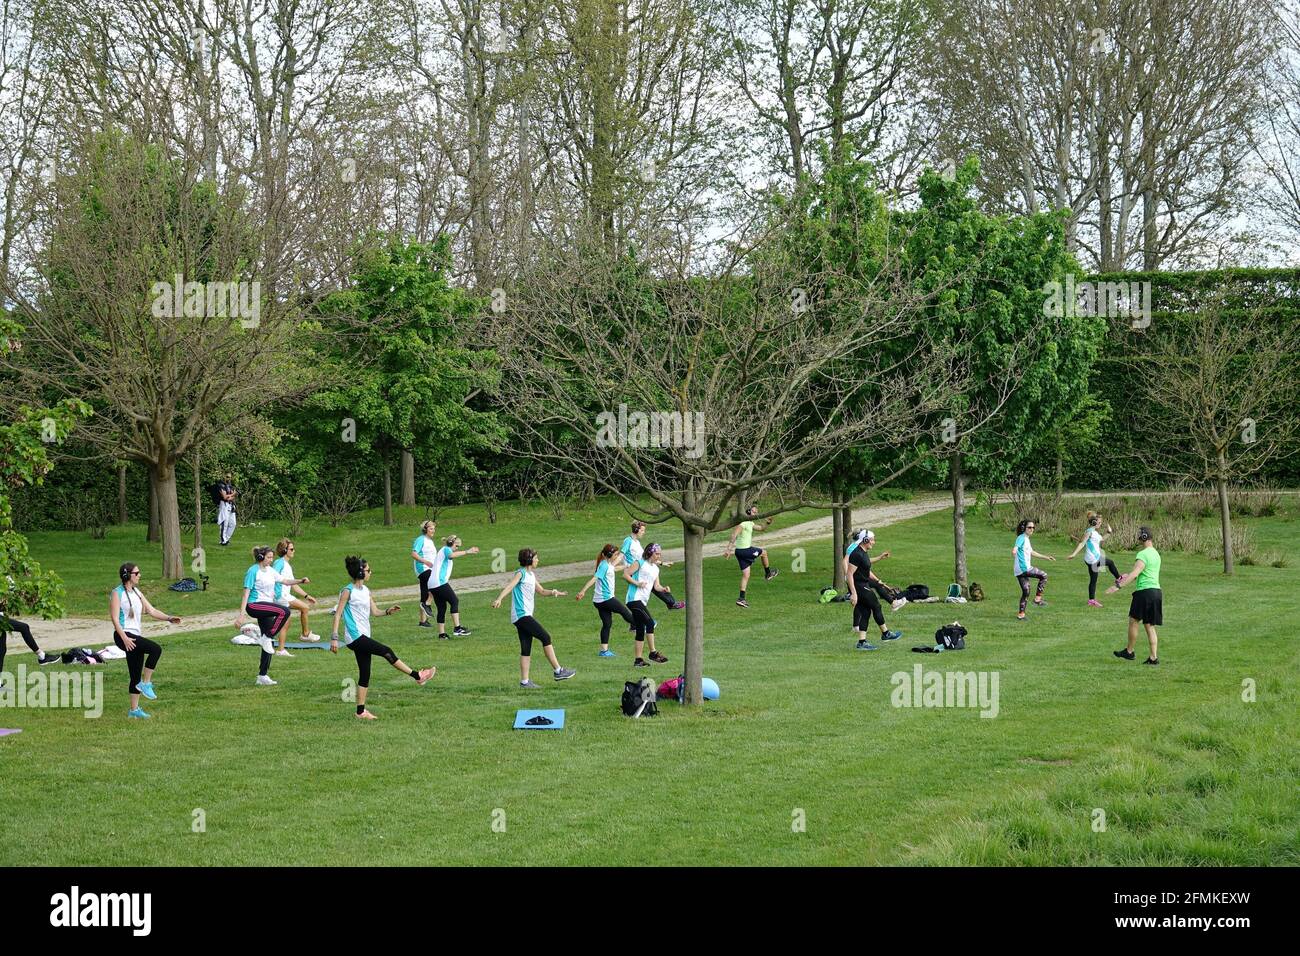 Training im Freien. Open Air. Menschen, die im Park Gruppenübungen machen, halten Abstand voneinander. Soziale Distanzierung nach Covid-19 Coronavirus qu Stockfoto